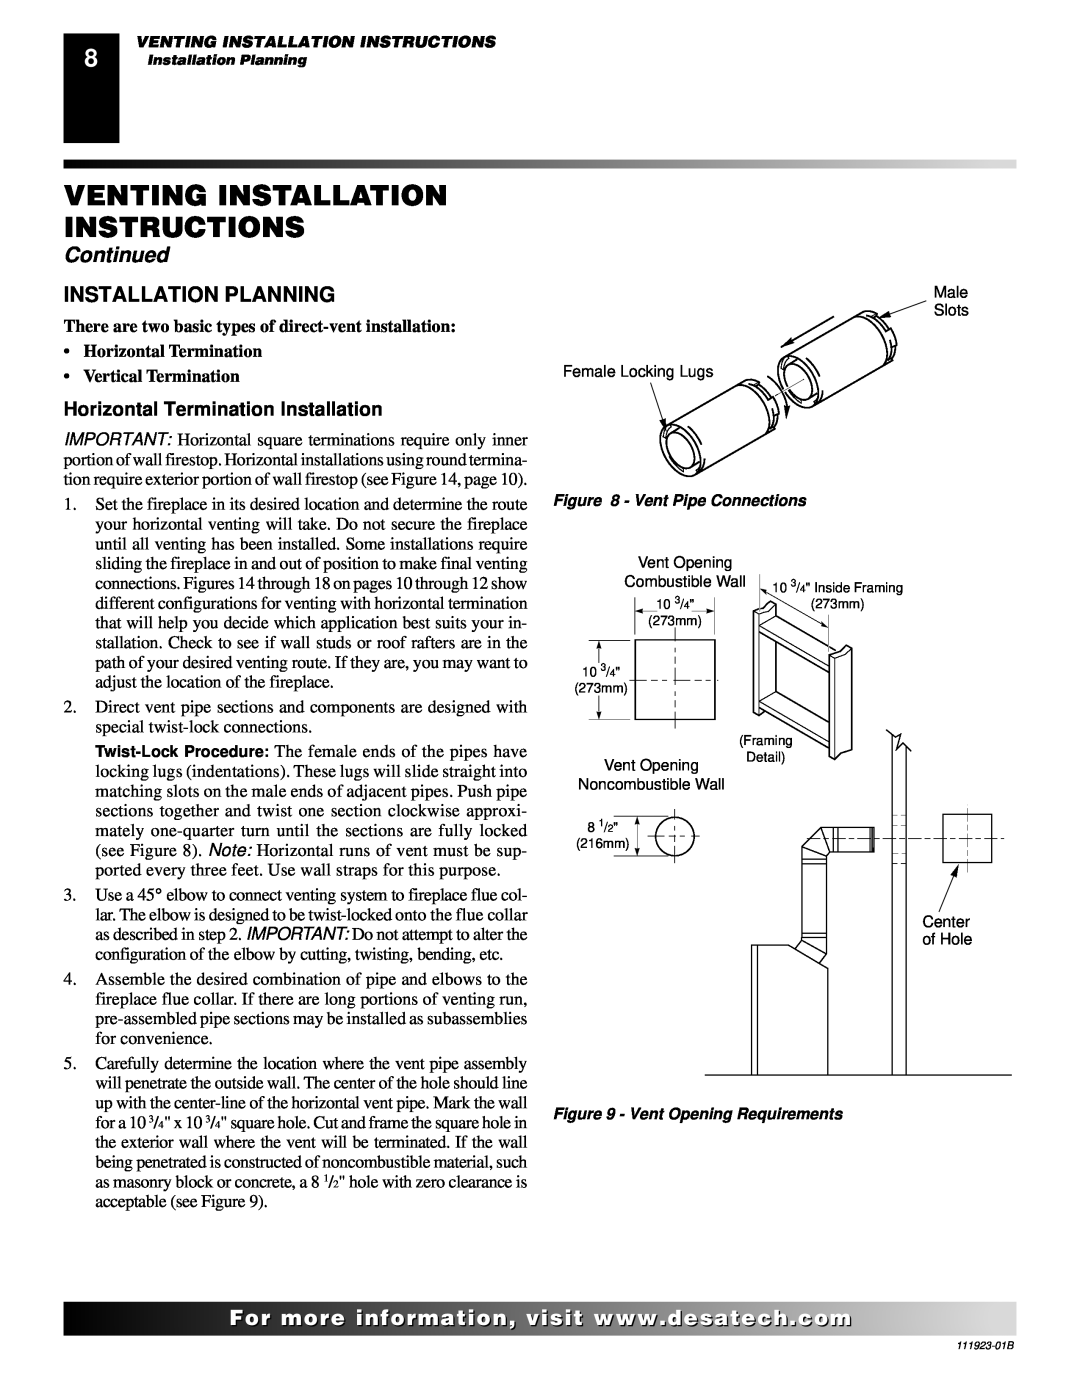 Desa (V)K36N SERIES Installation Planning, Horizontal Termination Installation, Venting Installation Instructions 